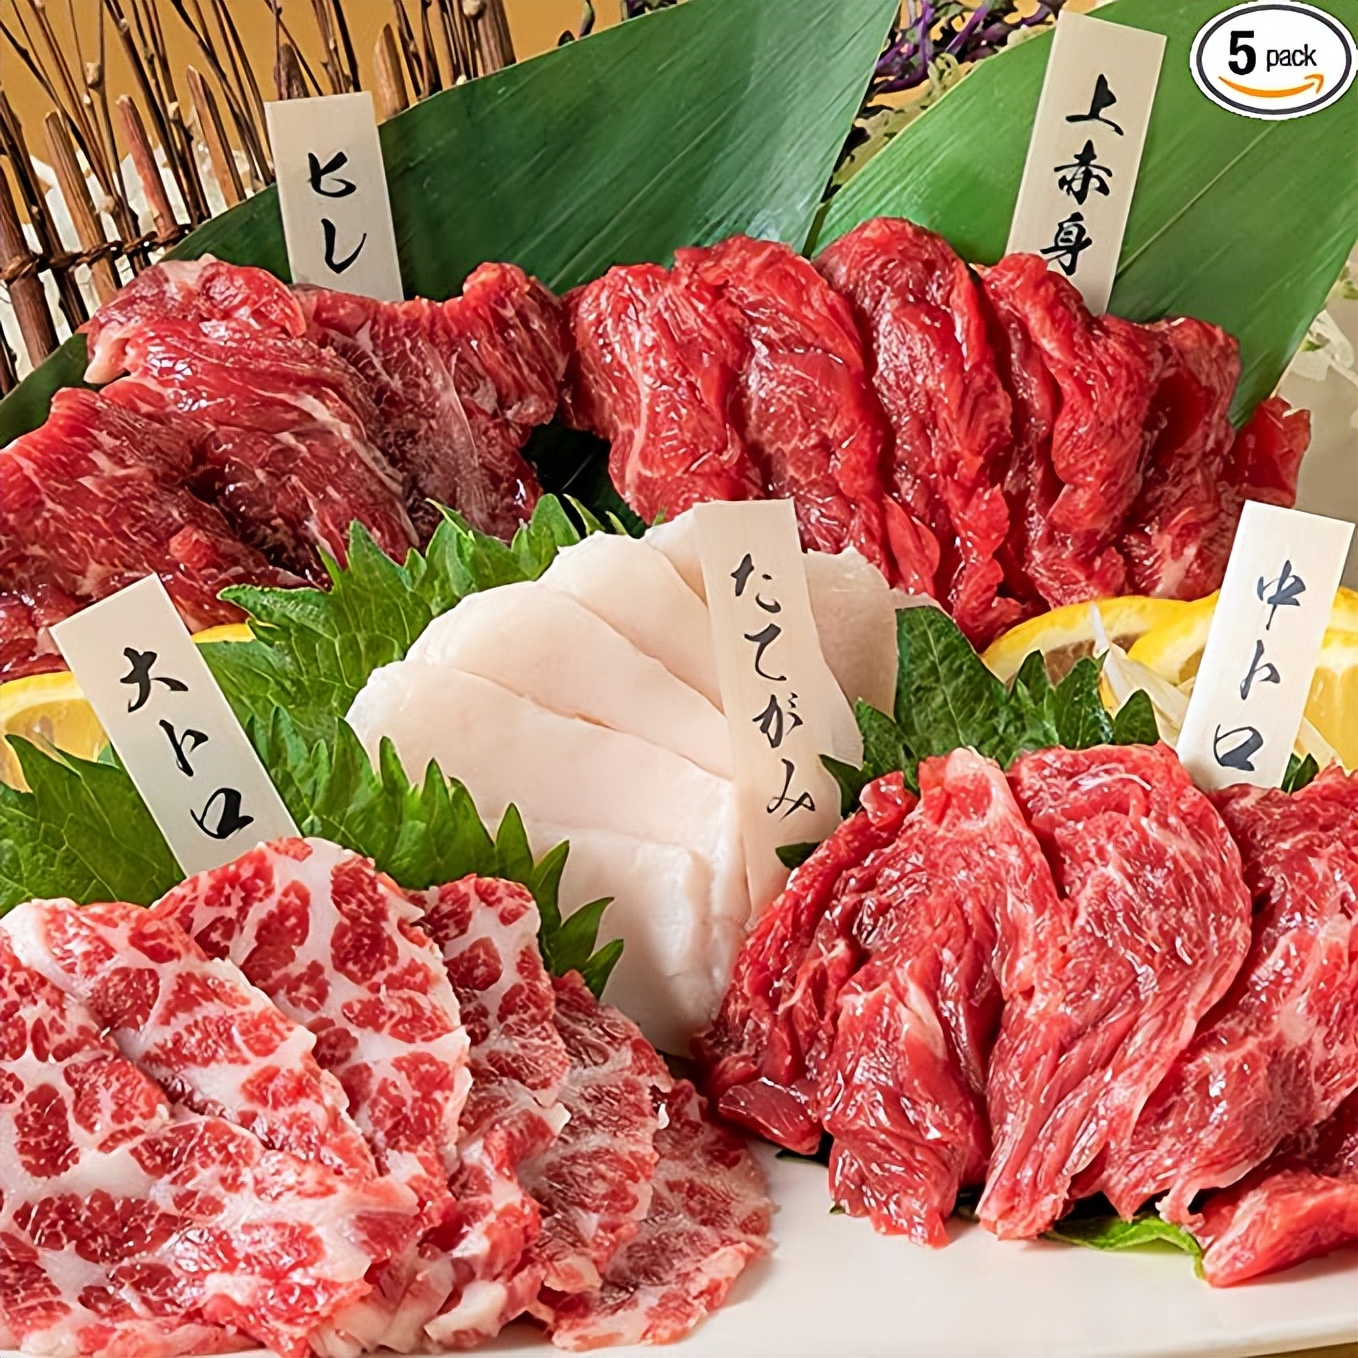 鱼苗盖饭、马肉刺身 盘点那些外国人难以下咽的日本美食